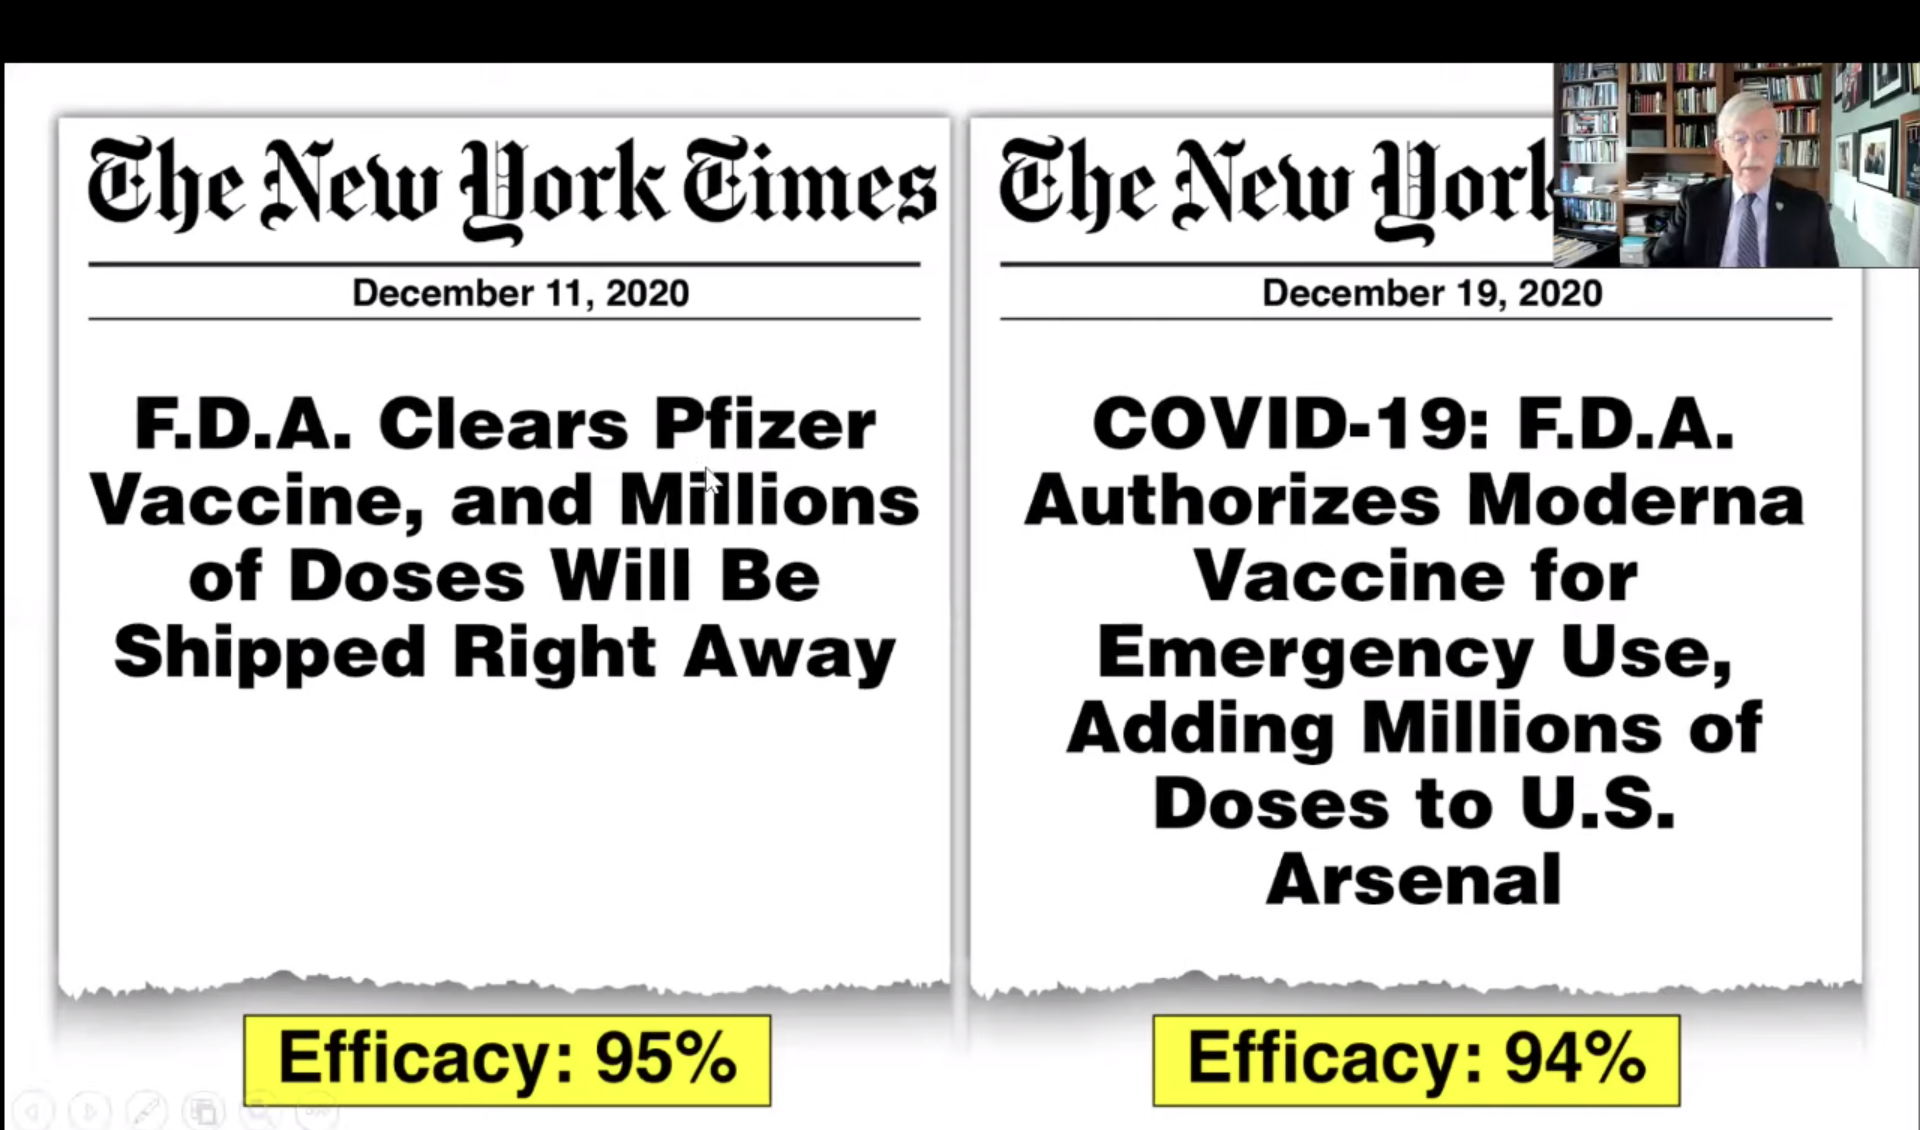 Vaccine efficacy